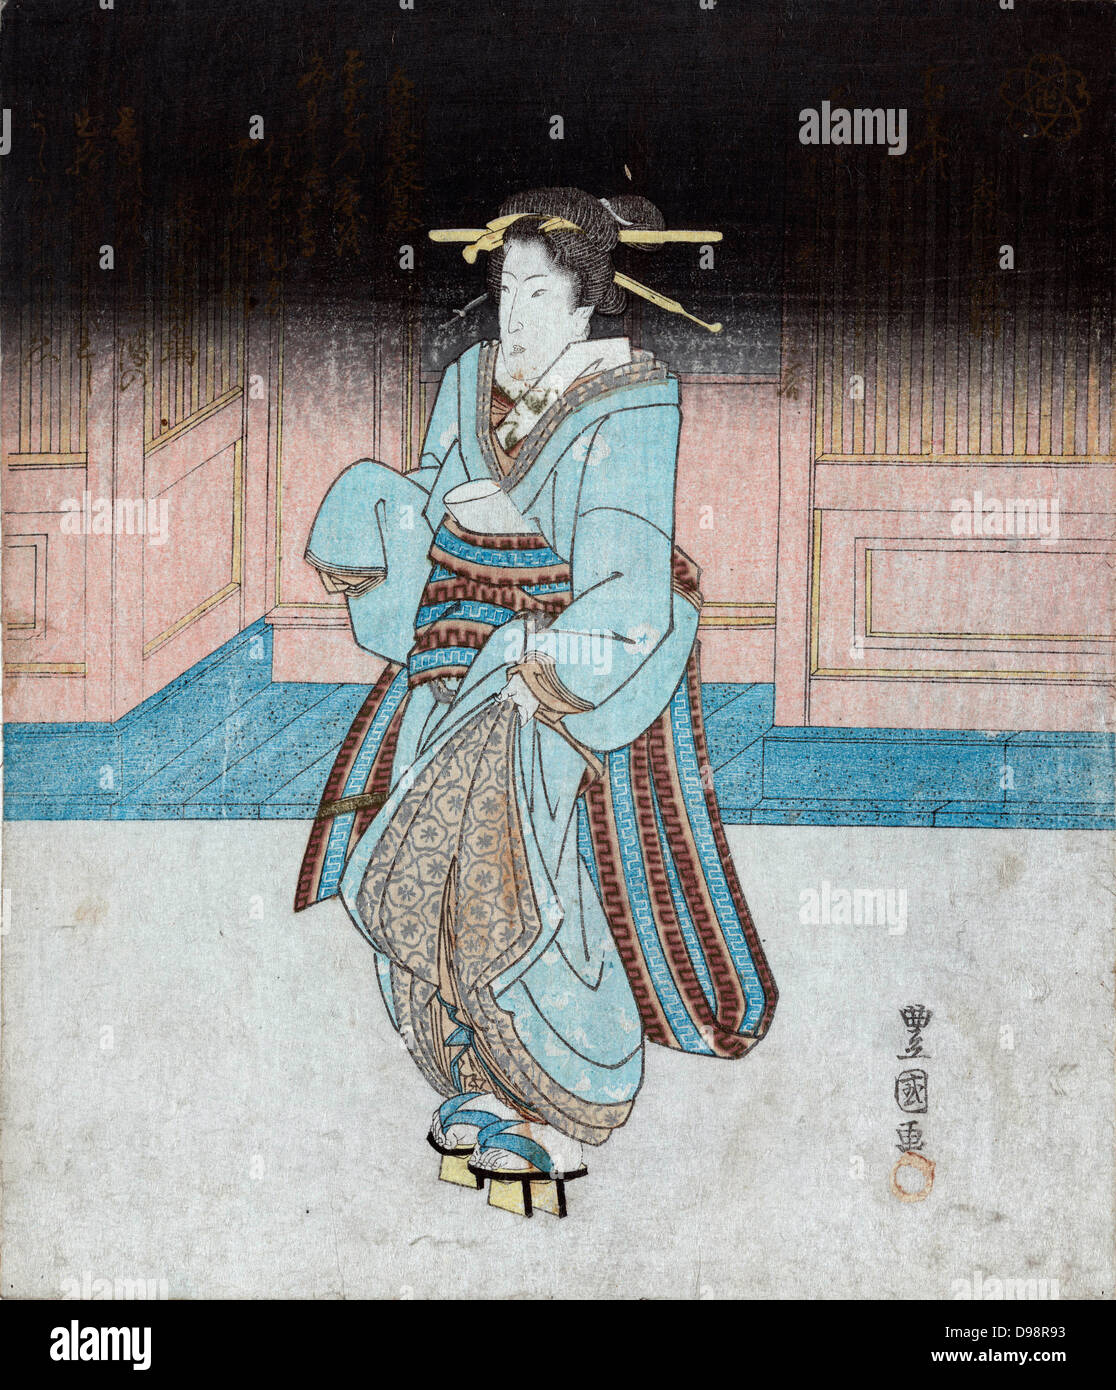 Geisha sur une promenade en soirée à Fukagawa, c1830. Utagawa Toyokuni (c1777-1835) artiste japonais Ukiyo-e. Geisha avec coiffure traditionnelle en kimono bleu, le port de pattens, robe portefeuille pour éviter la masse. Femme Artiste Banque D'Images